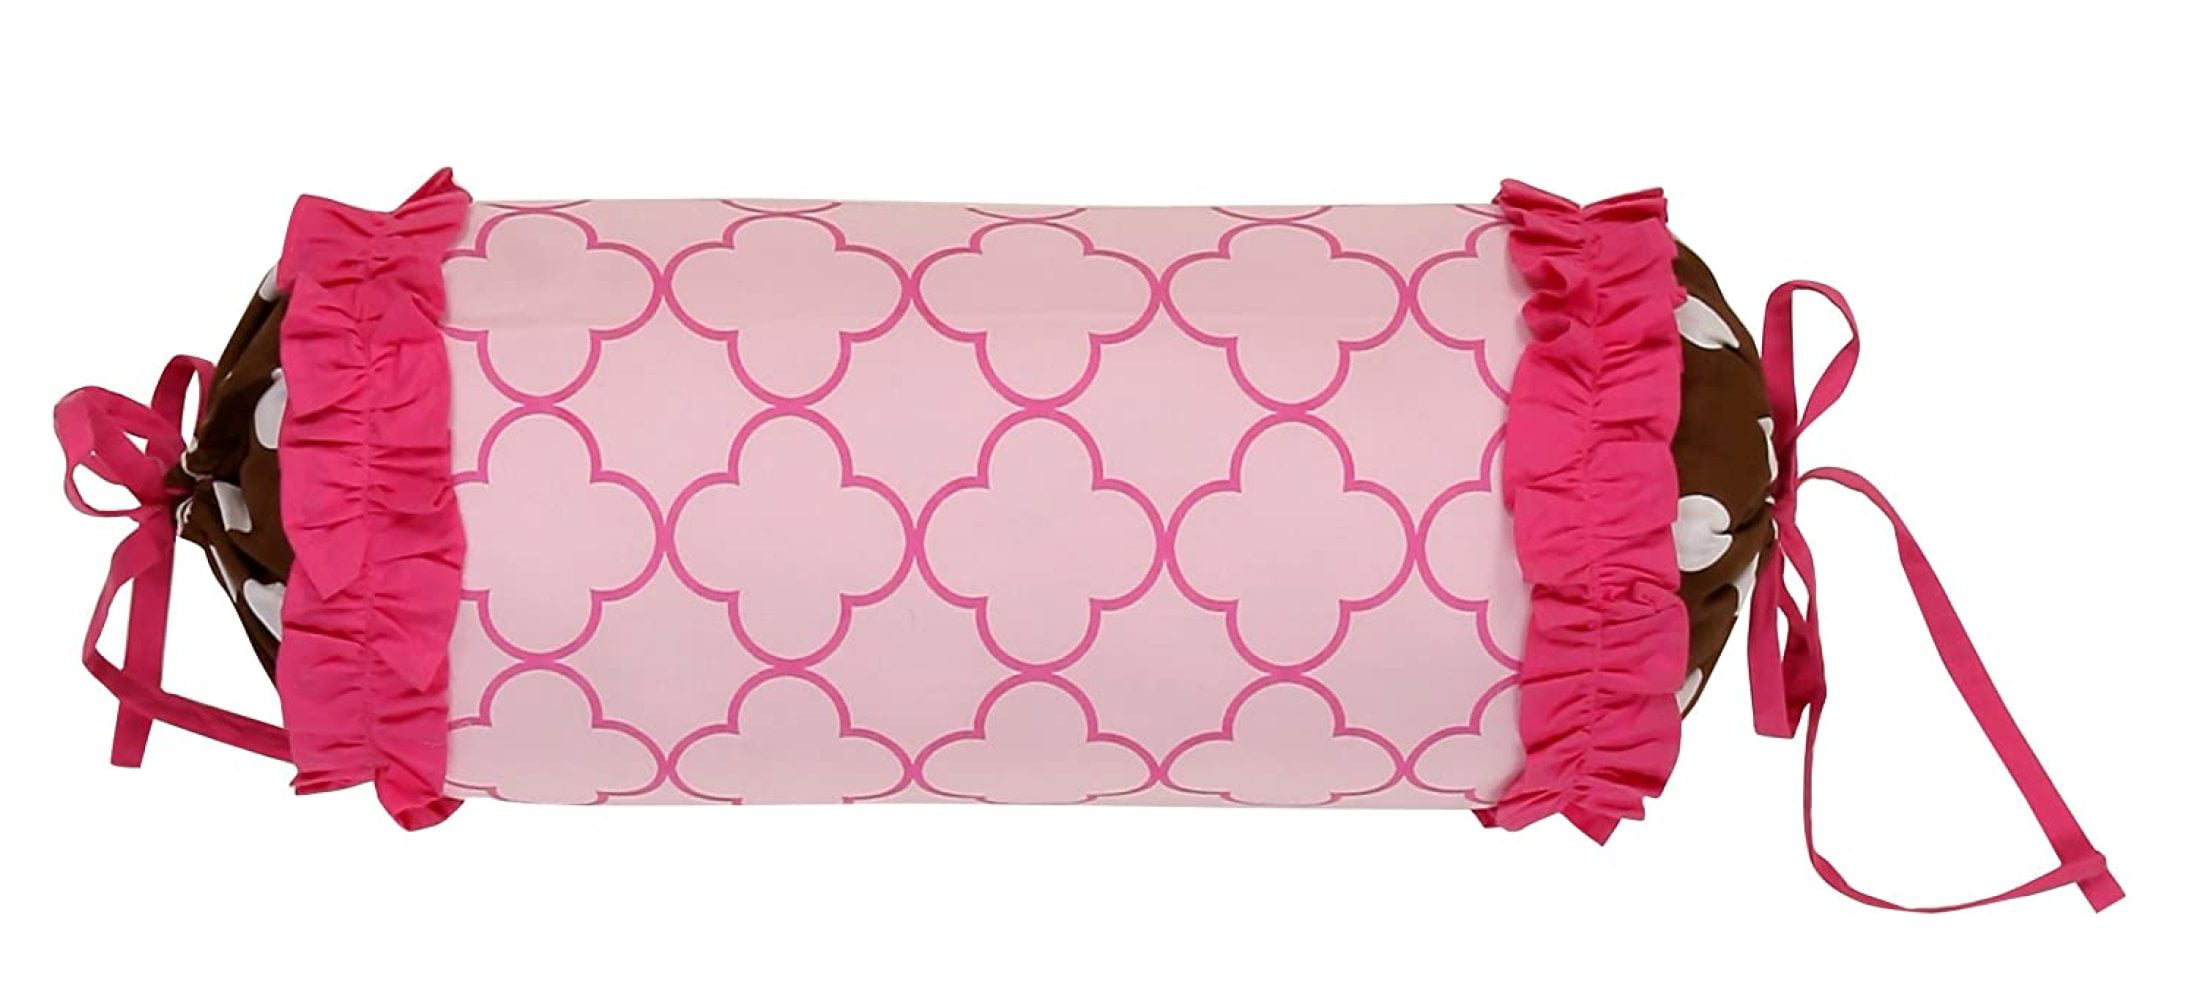 Bacati Damask Pink/Chocolate Neck Roll Pillow 